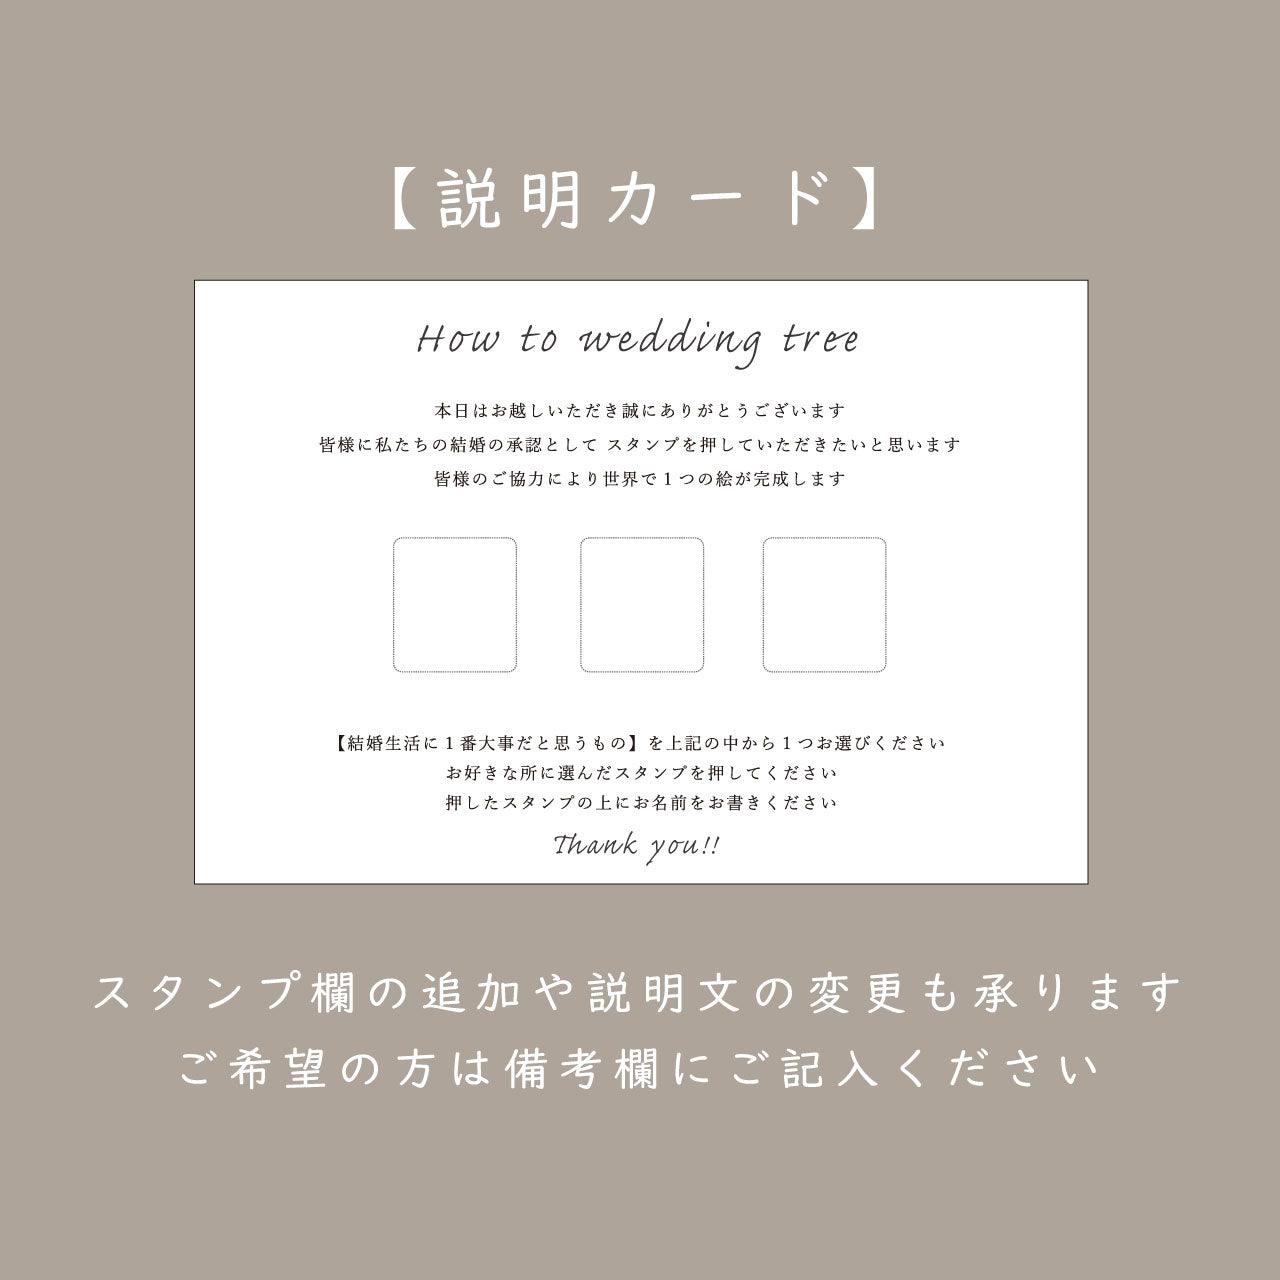 【結婚証明書】ウェディングツリー